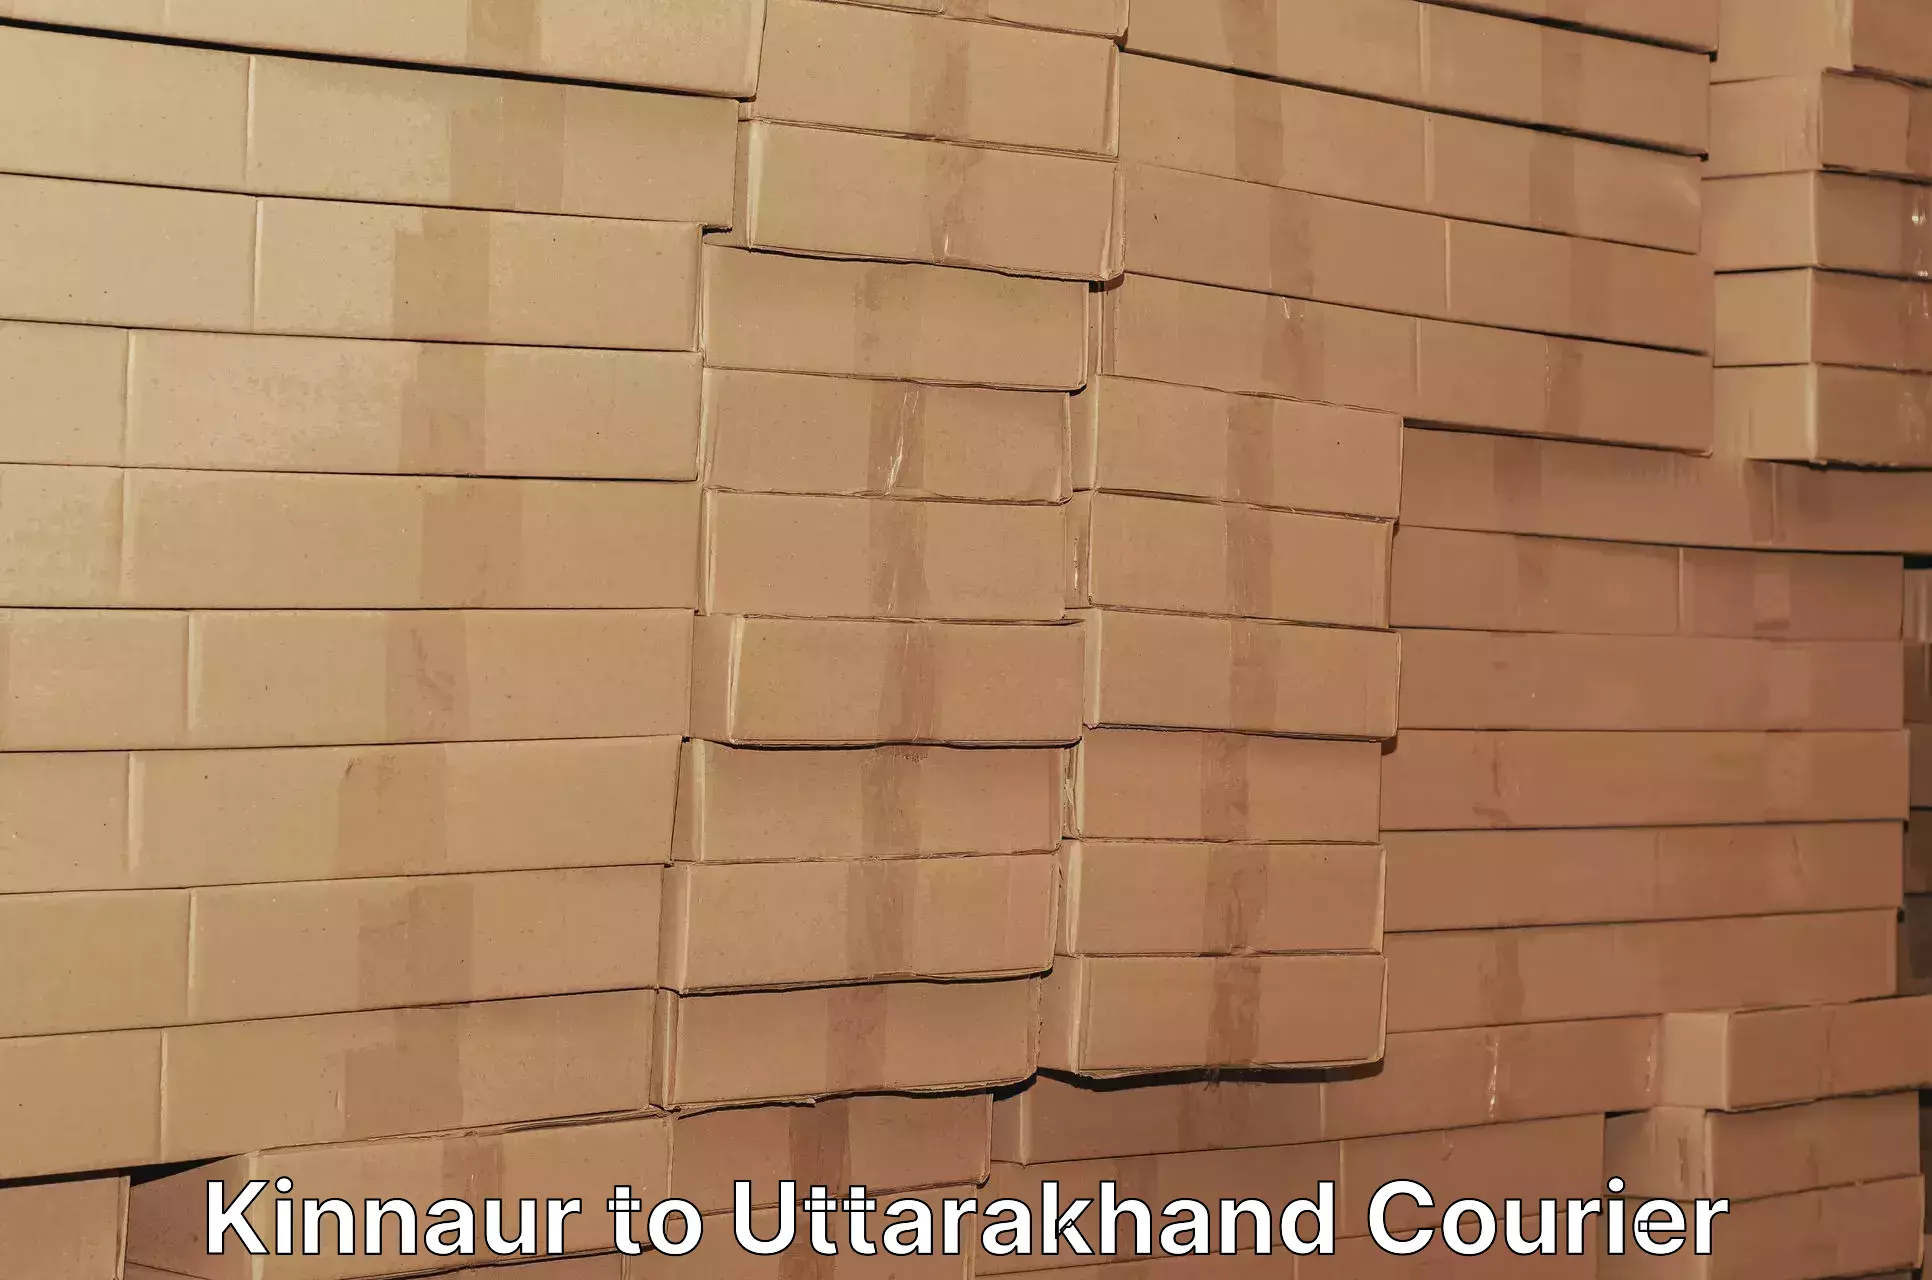 Customer-oriented courier services Kinnaur to Uttarakhand